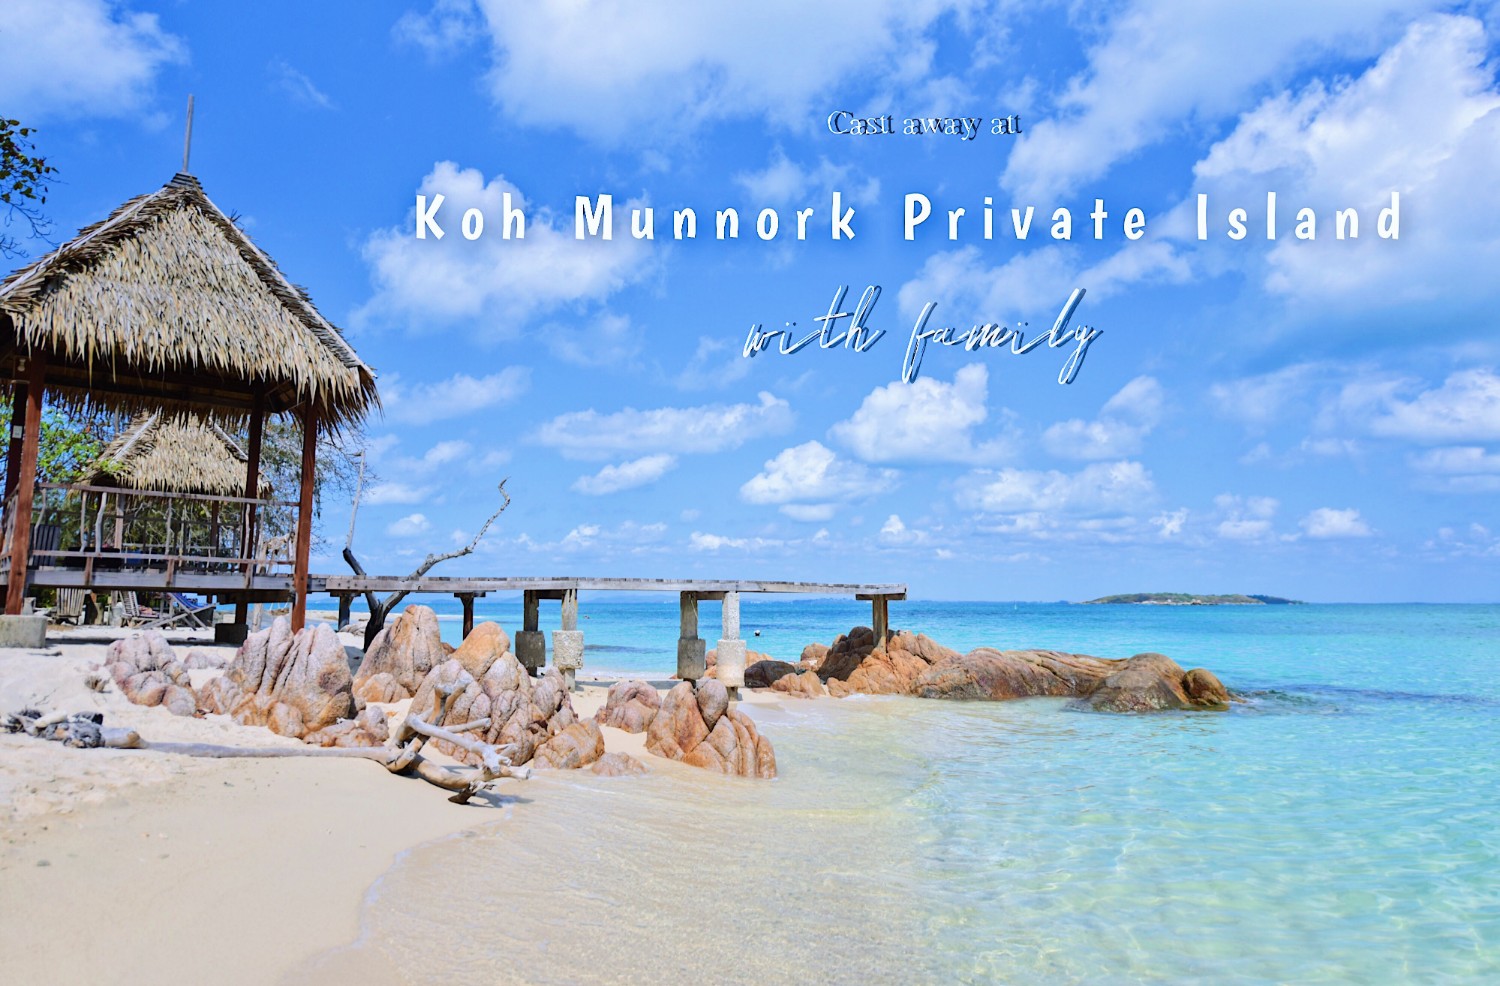 รีวิว | Koh Munnork Private Island @ ชีวิตติดเกาะจะทำให้คุณหลงรักน้ำทะเลสีฟ้า #มันนอกไม่แพ้มัลดีฟ - Pantip